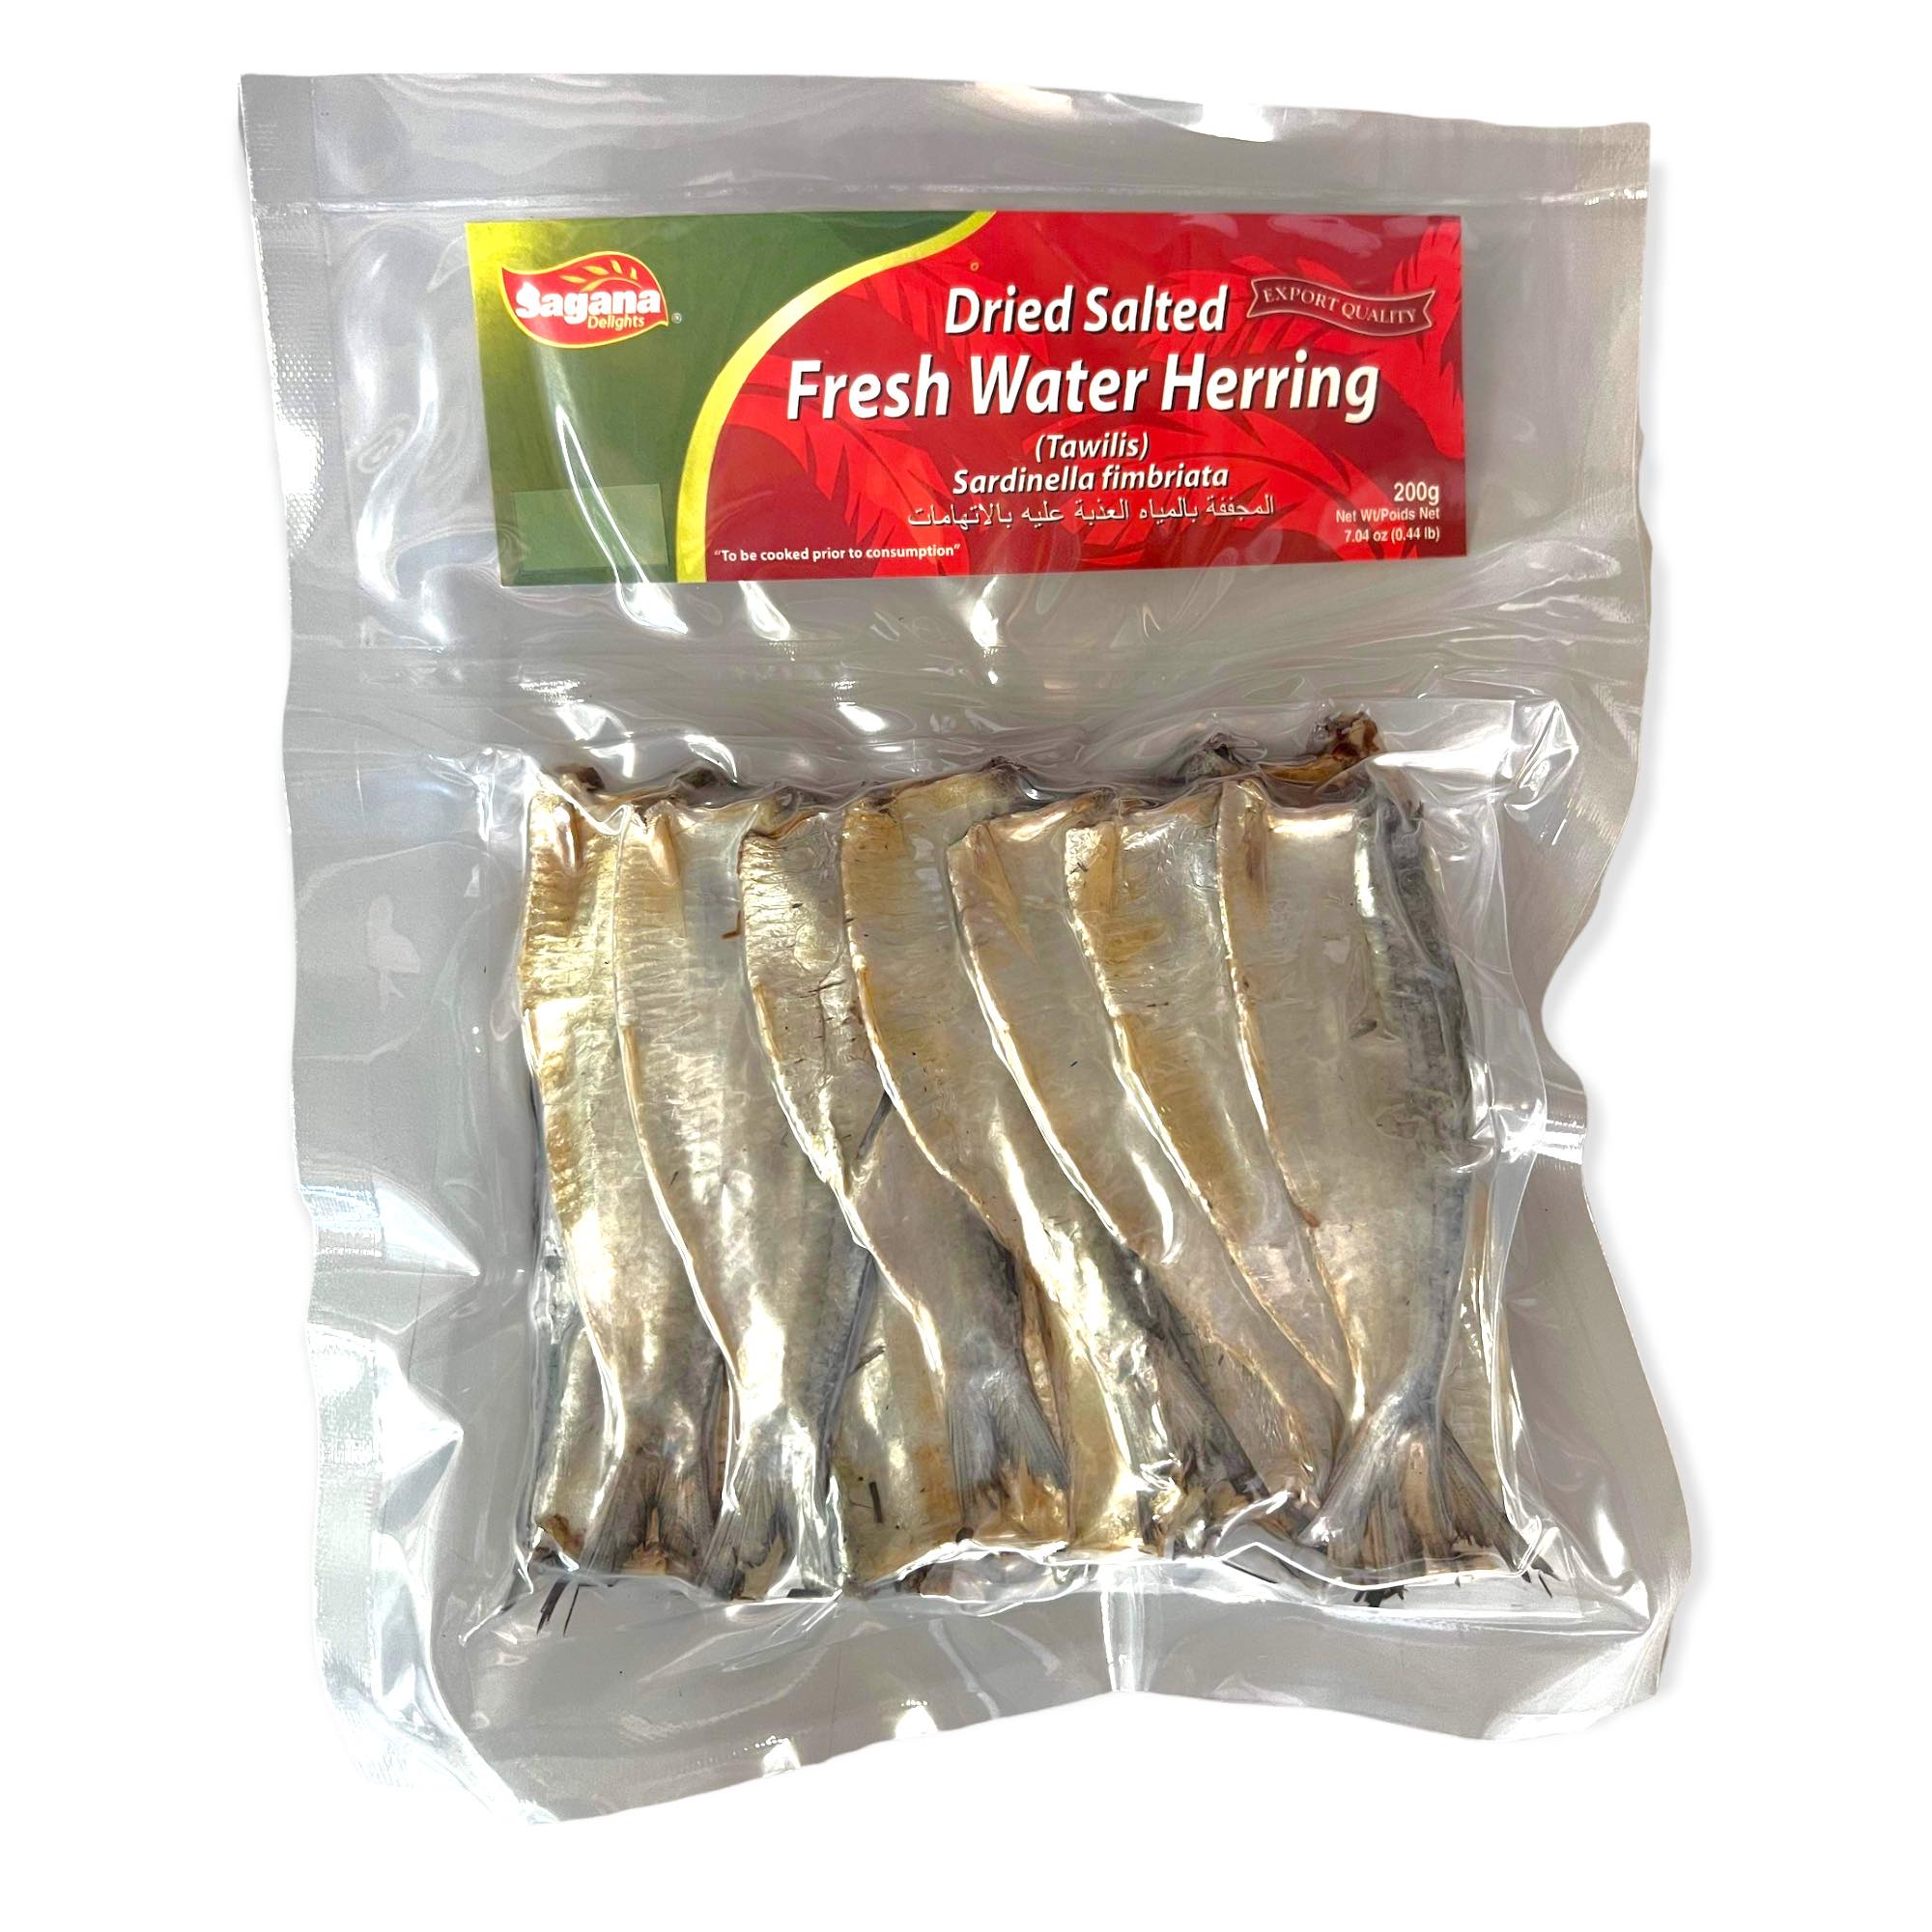 Sagana - Dried Salted Fresh Water Herring (Tawilis) - 200 G